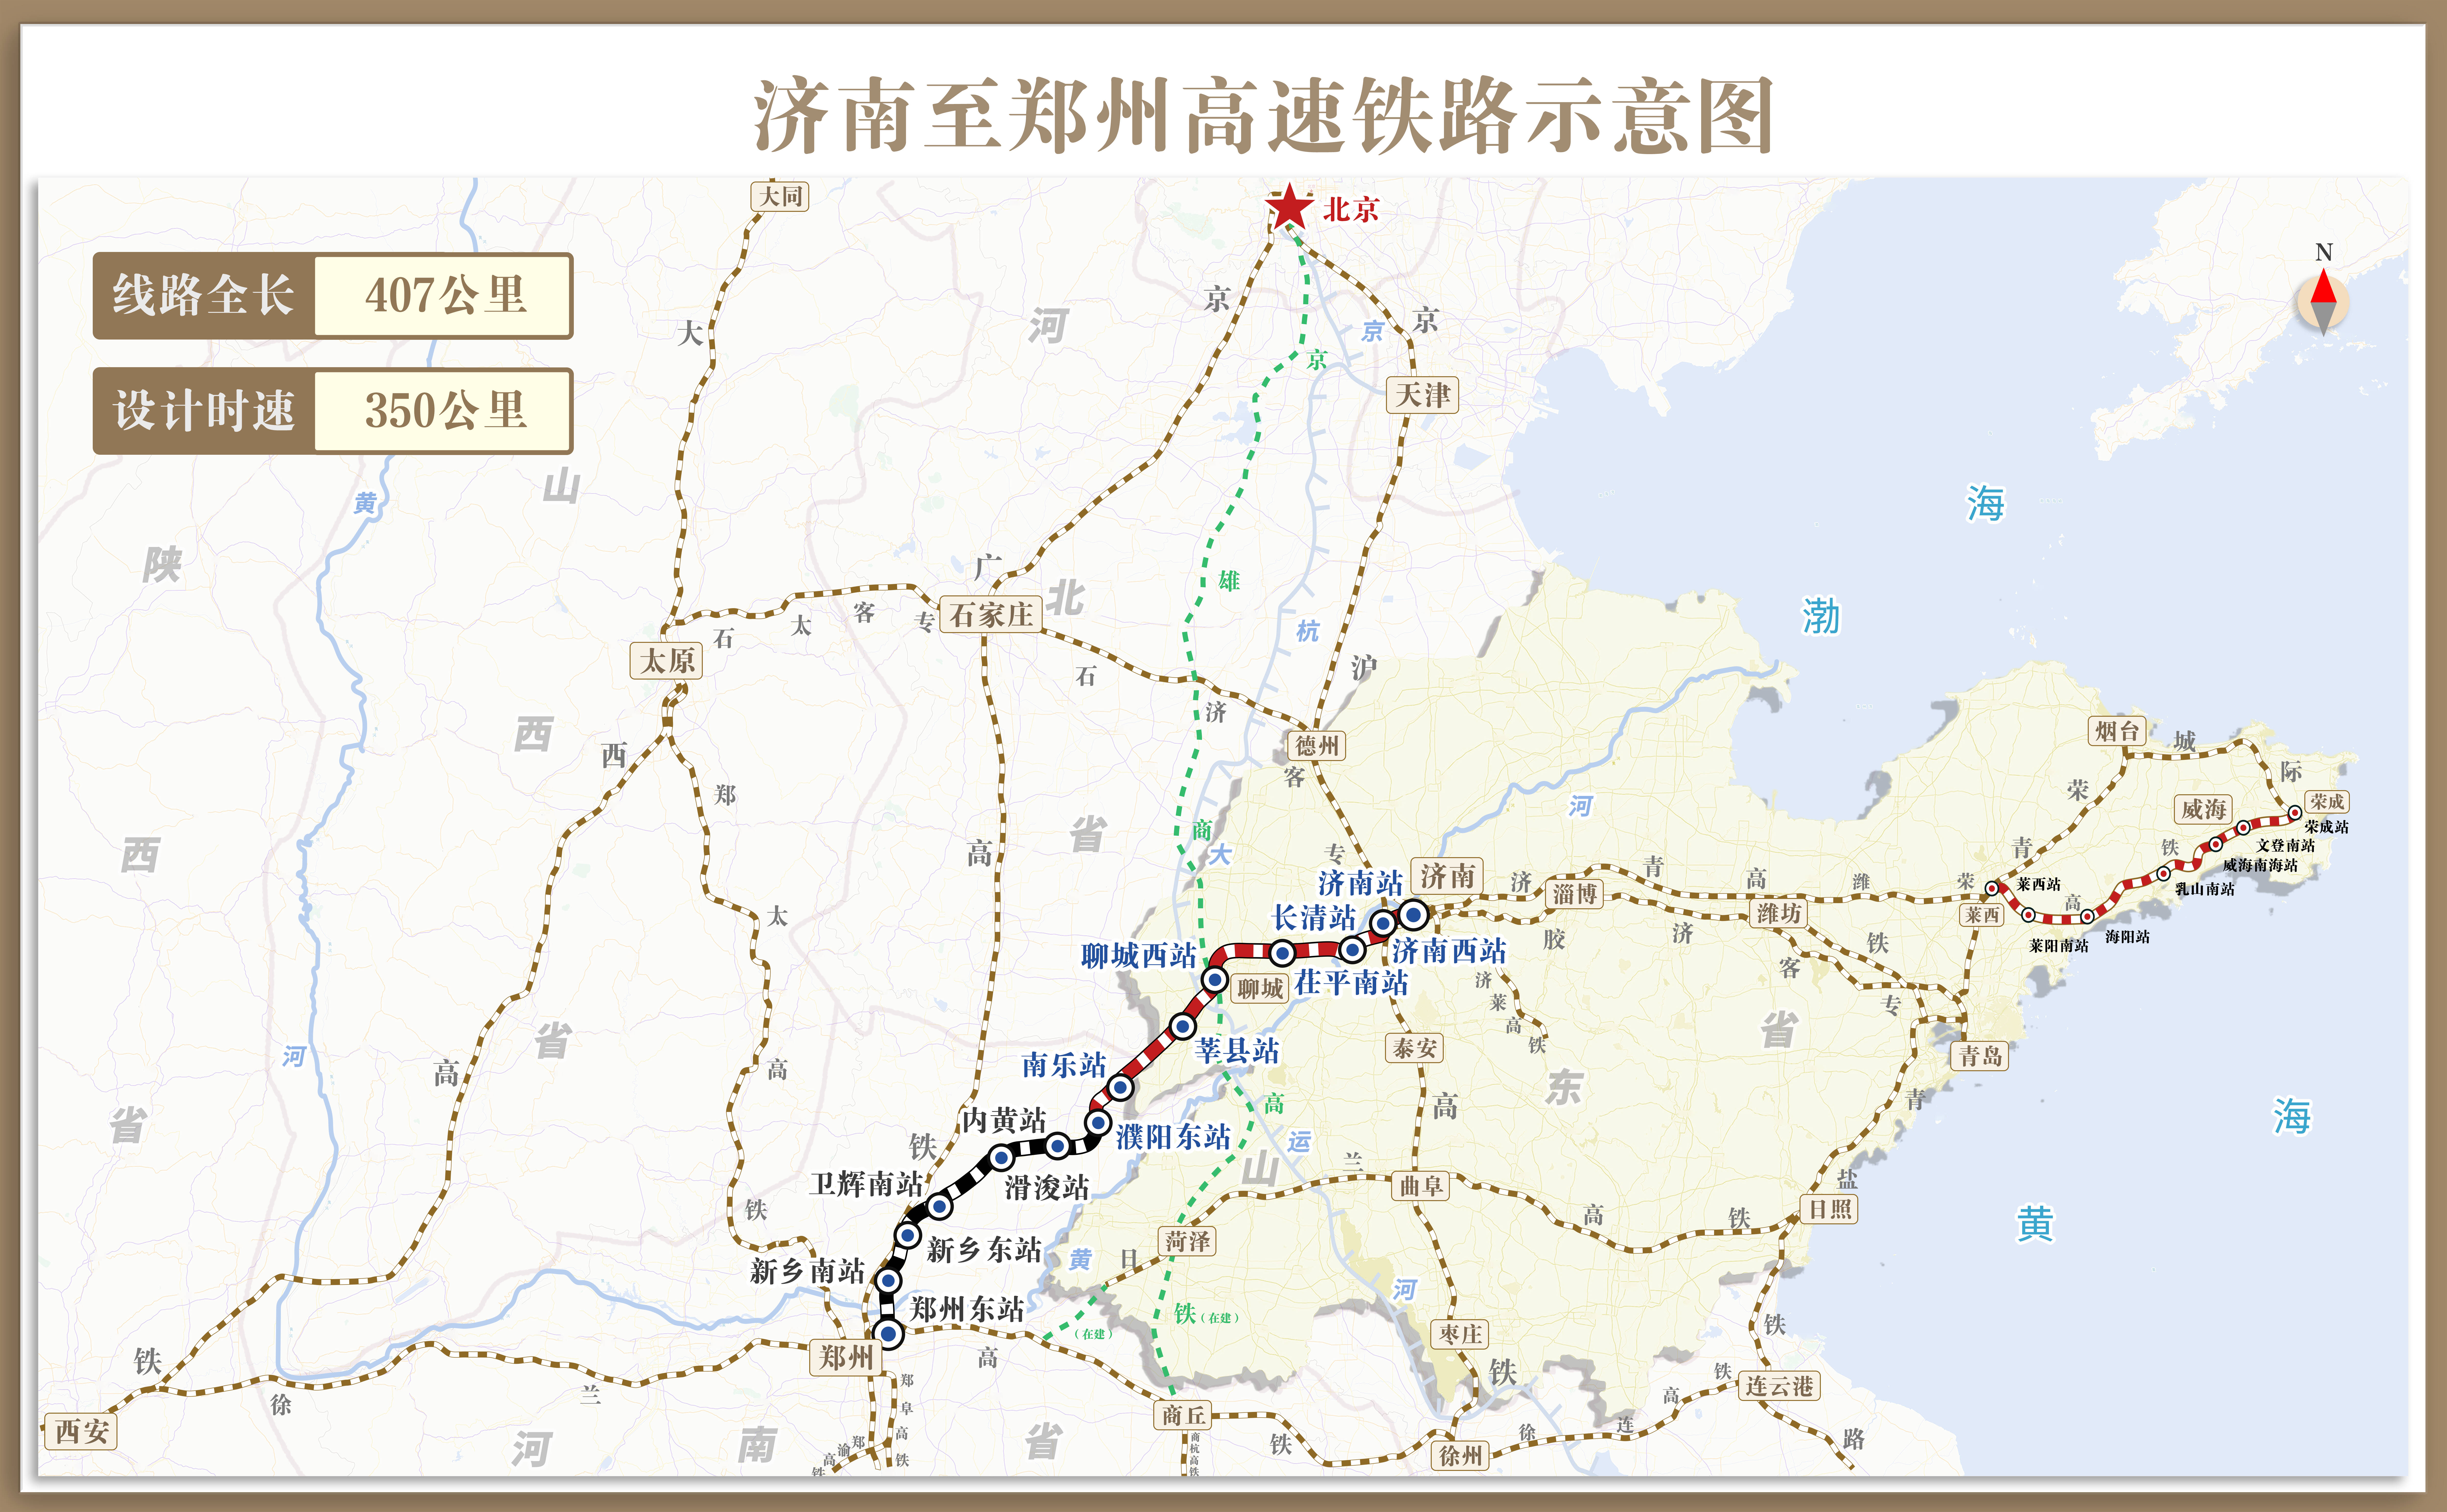 济南至郑州高速铁路12月8日全线贯通运营济南至郑州最快1小时43分可达